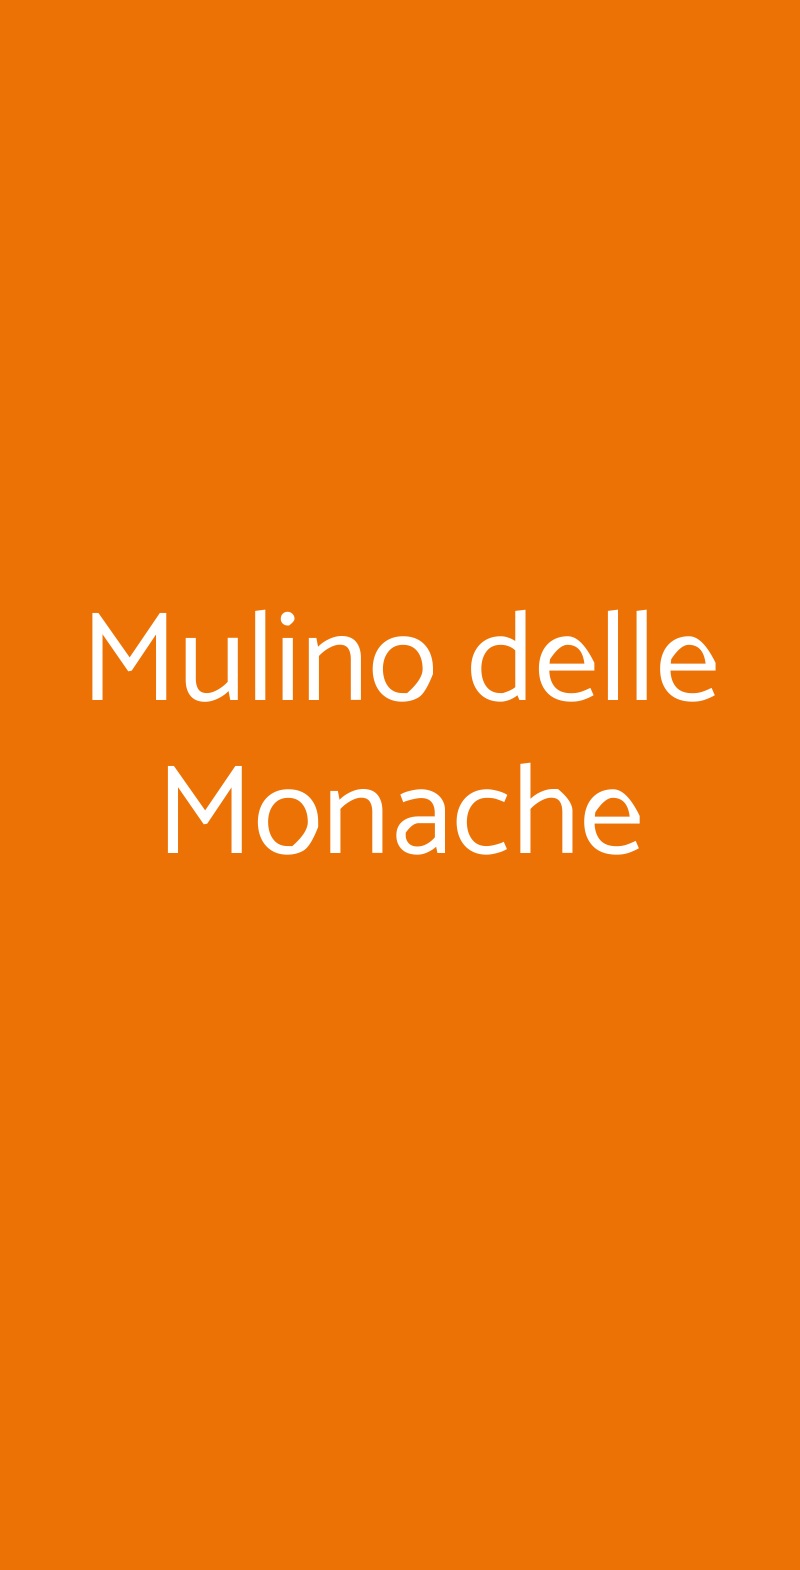 Mulino delle Monache Macerata Feltria menù 1 pagina